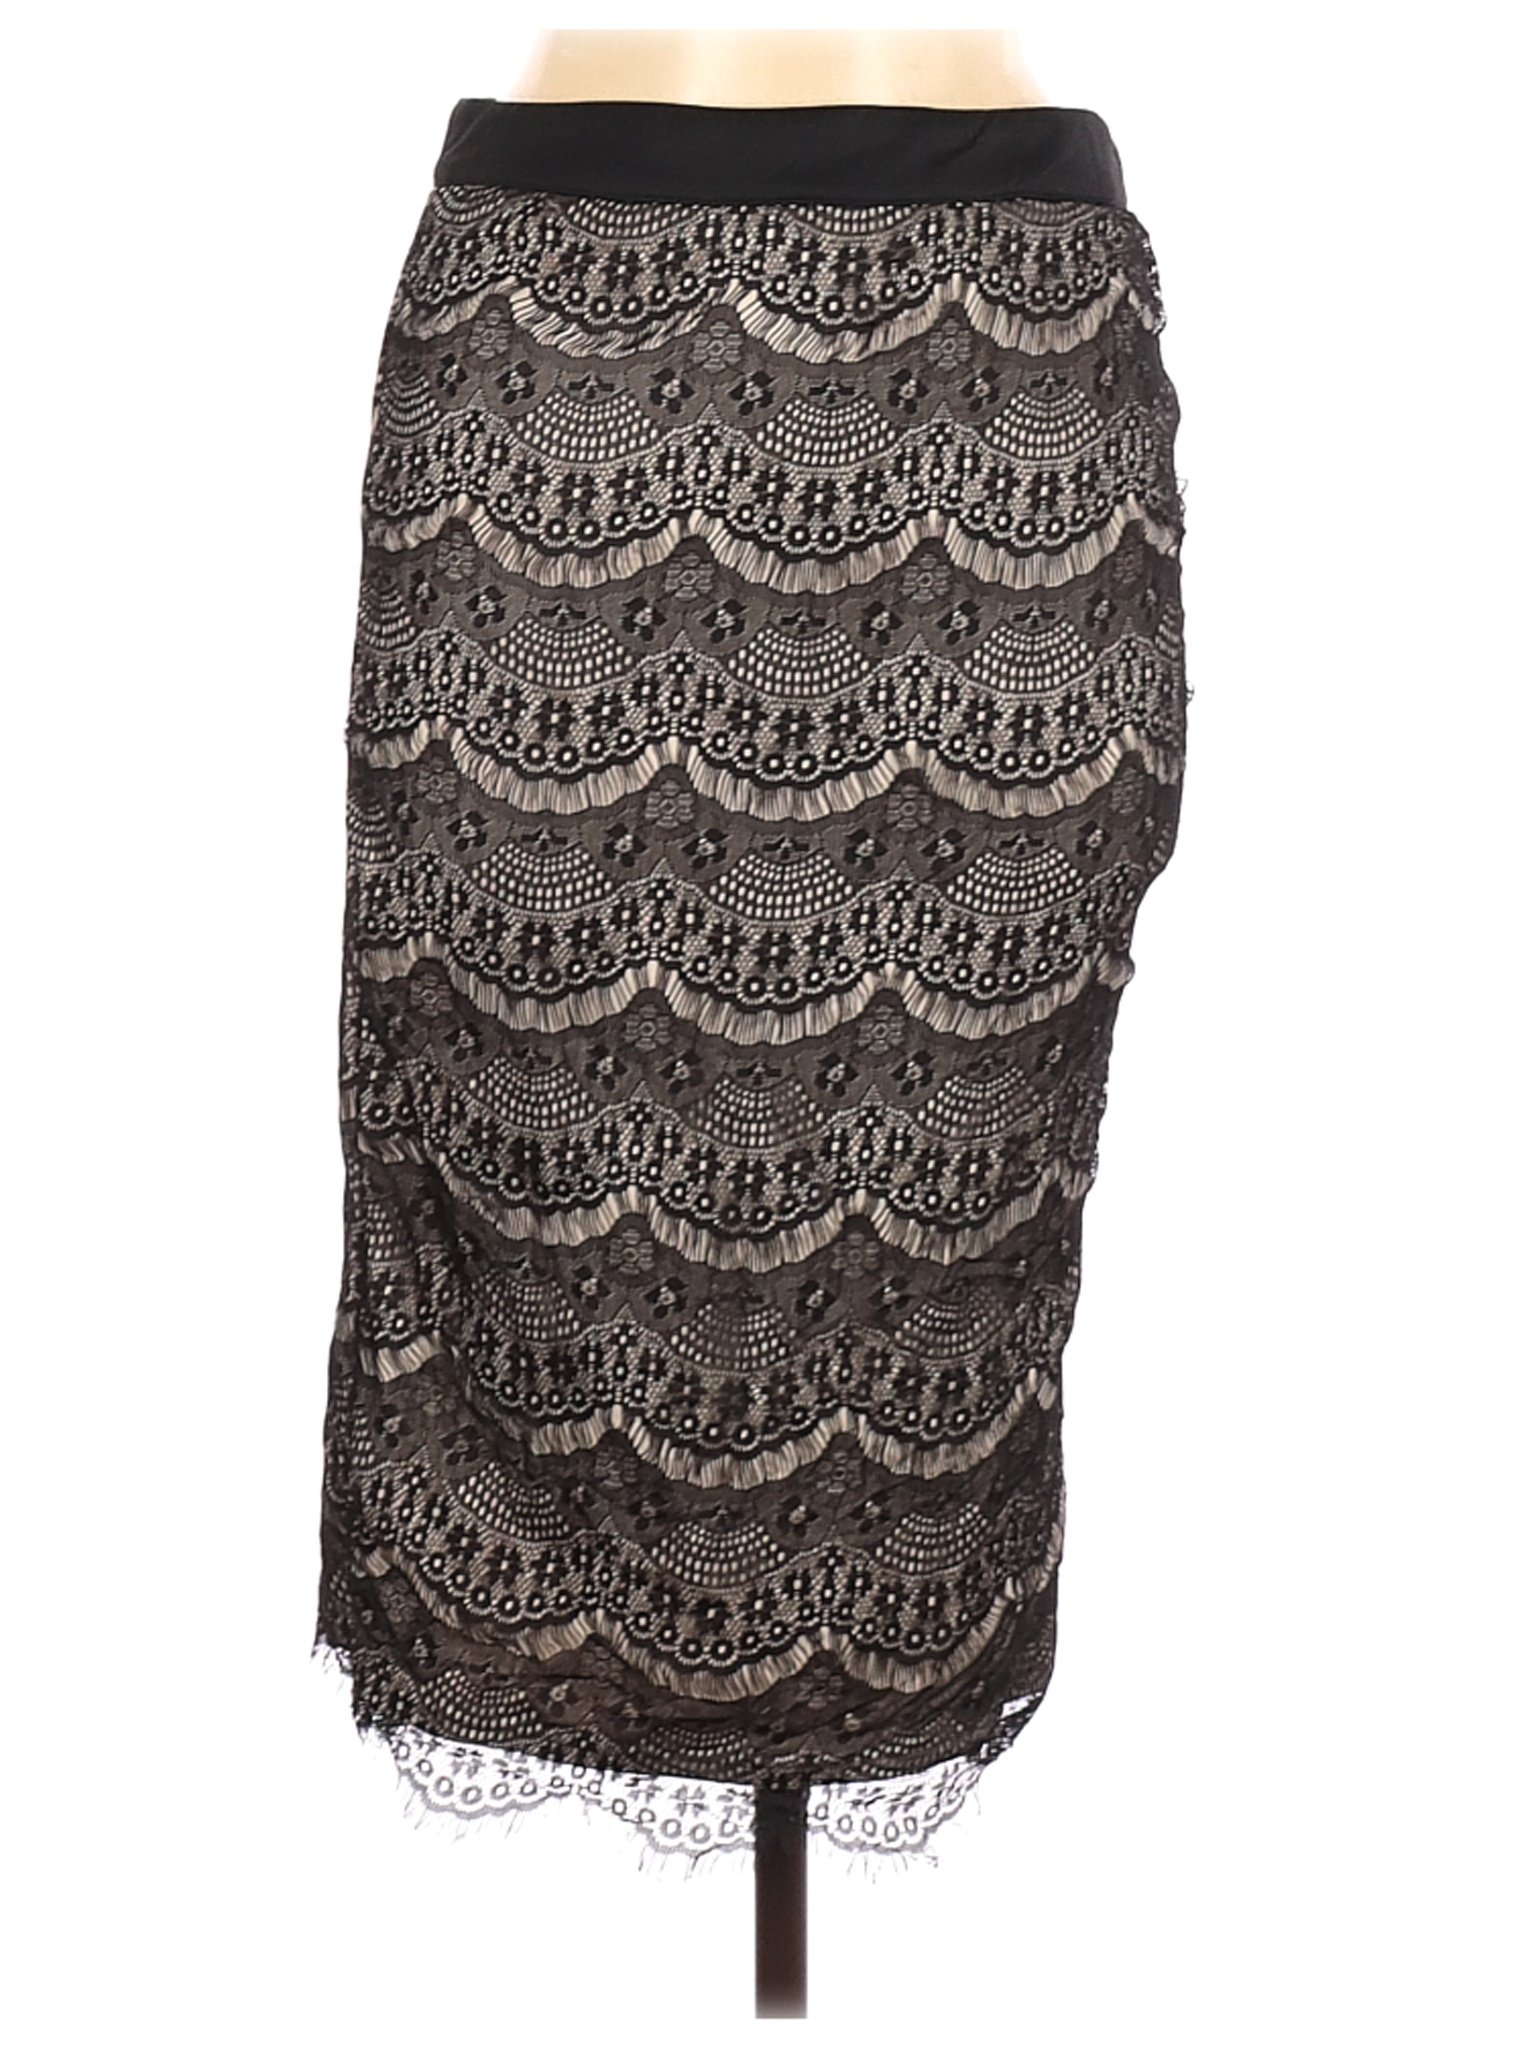 Ardene Women Black Casual Skirt M | eBay